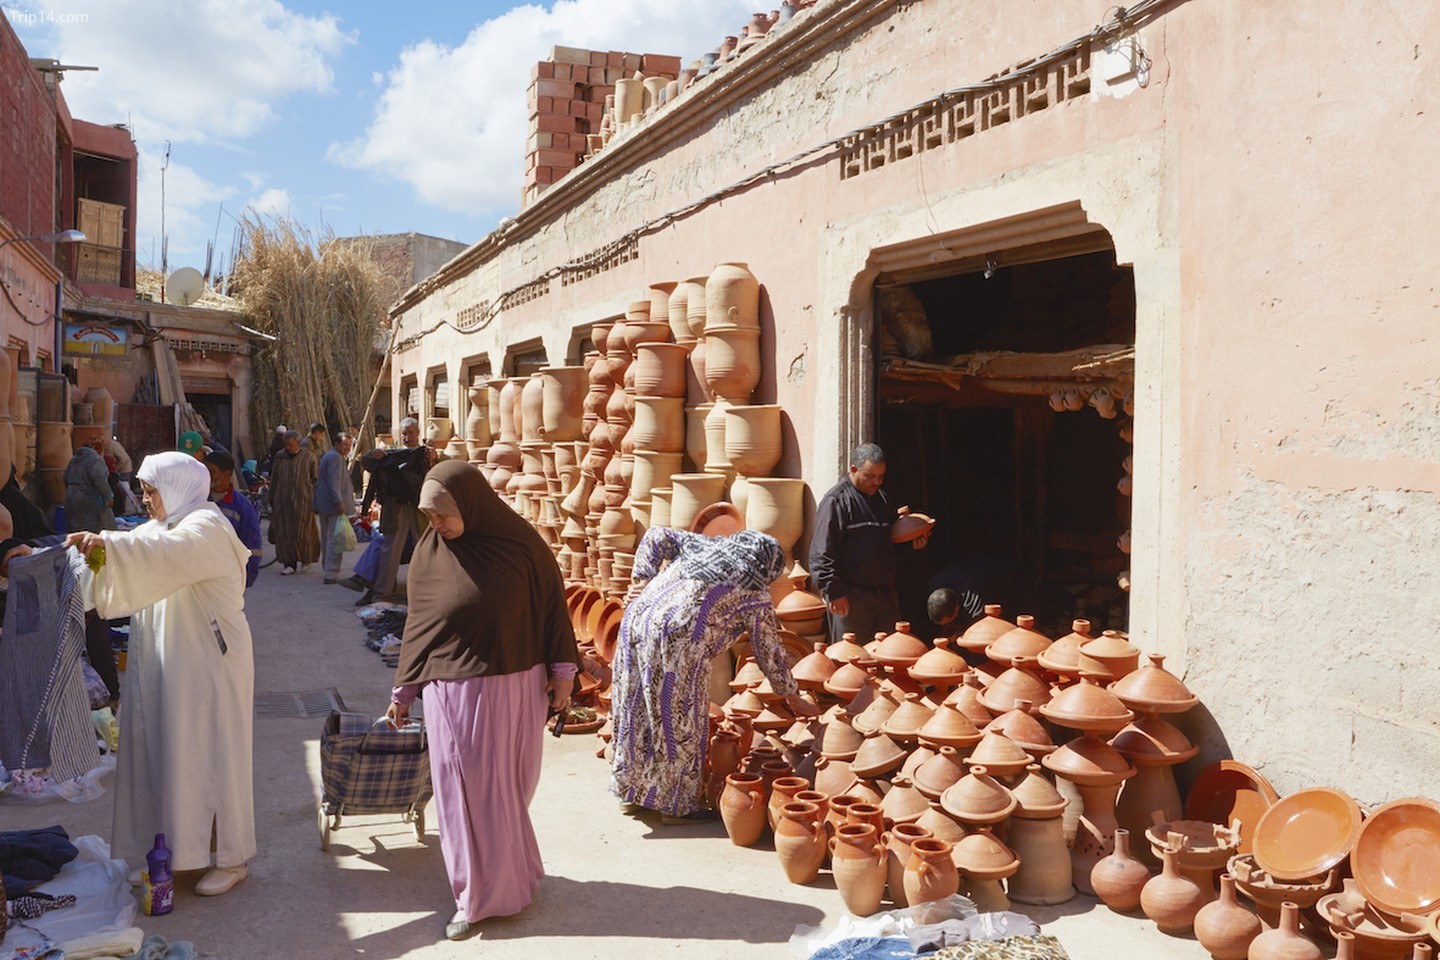 Chợ trời Bab El Khemis hàng tuần là điểm mua sắm nổi tiếng của người dân Marrakech